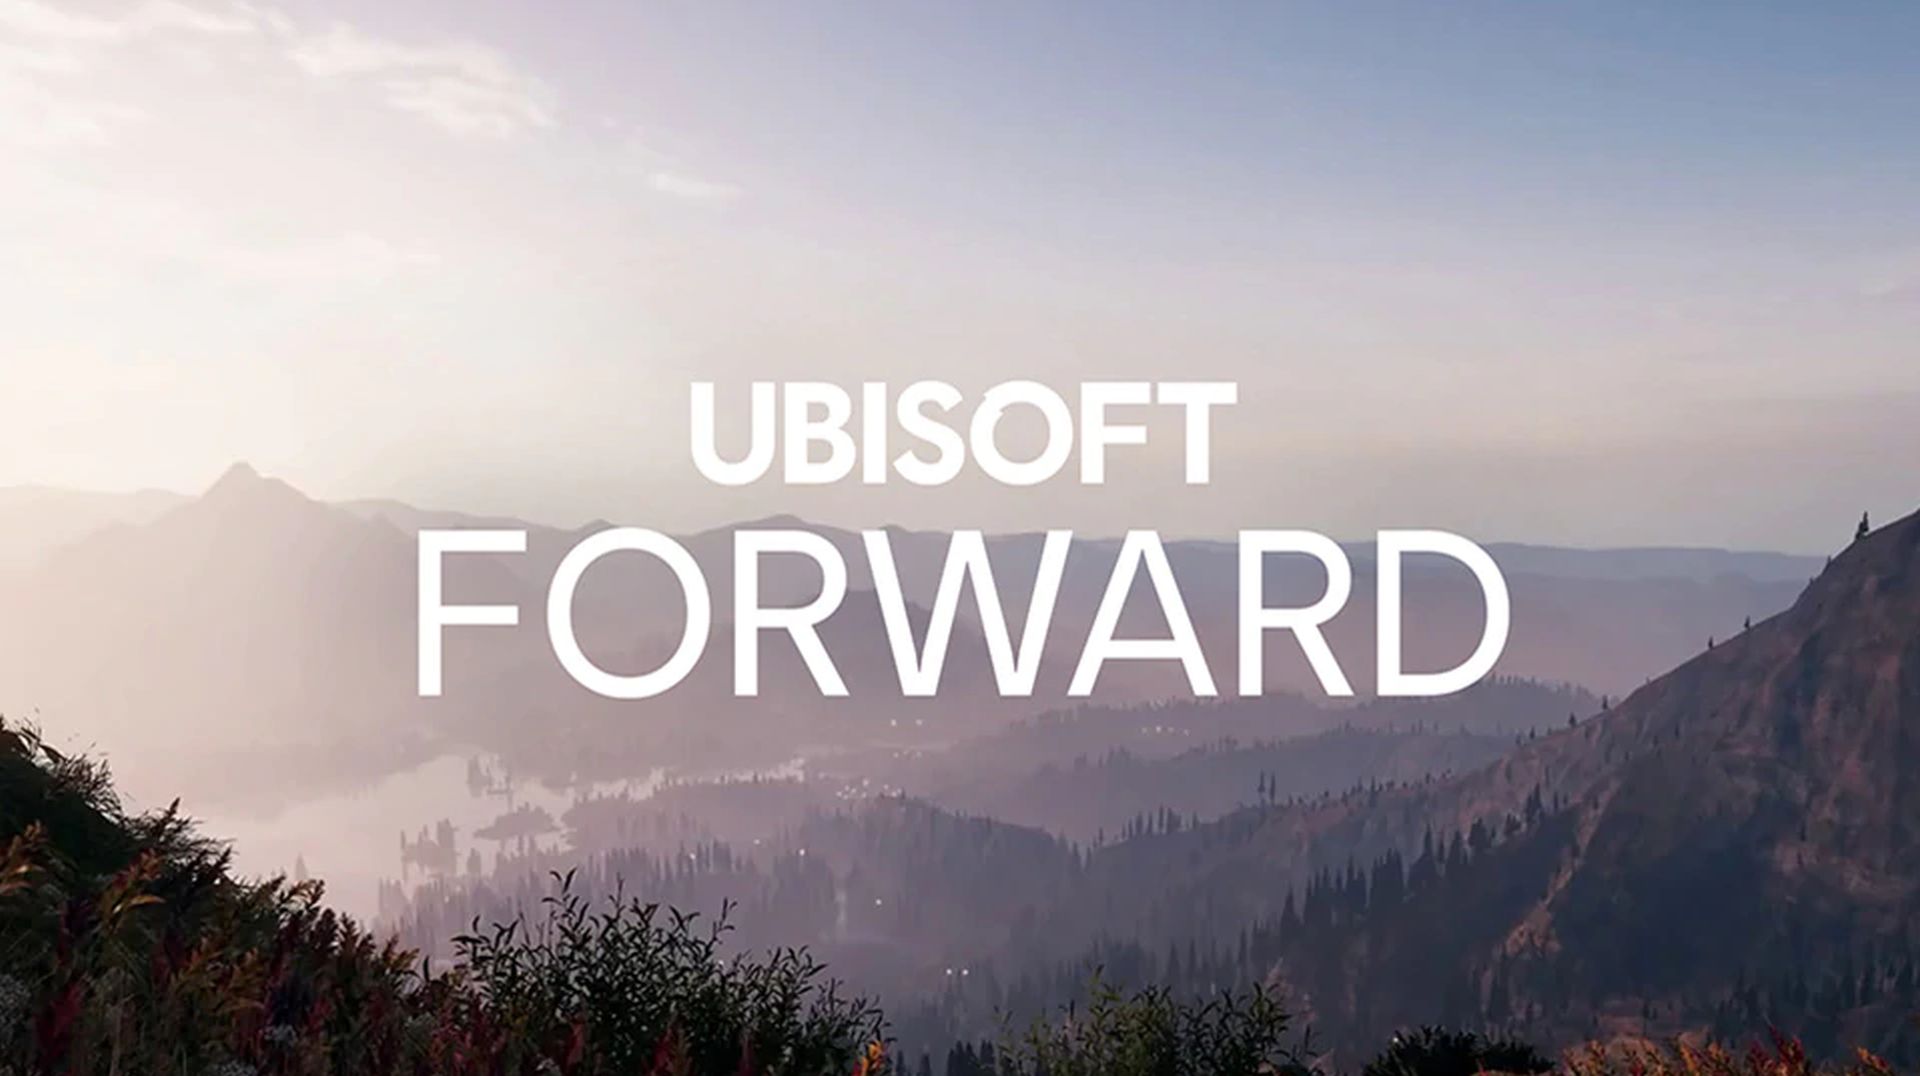 تماشا کنید: تیزر رویداد Ubisoft Forward منتشر شد